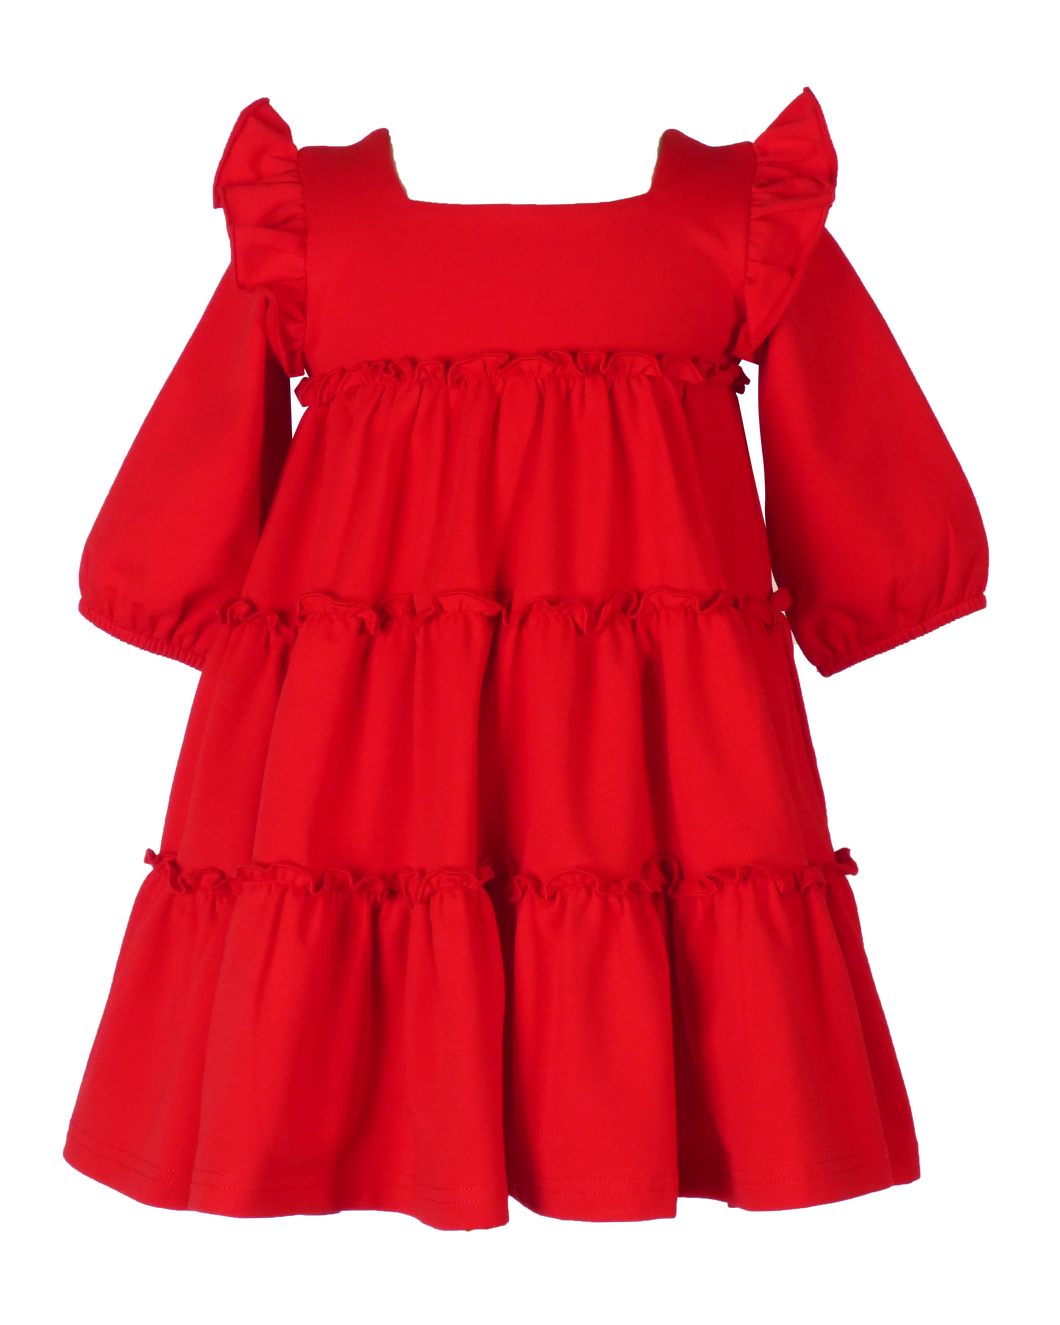 Ariel Dress - Red Knit